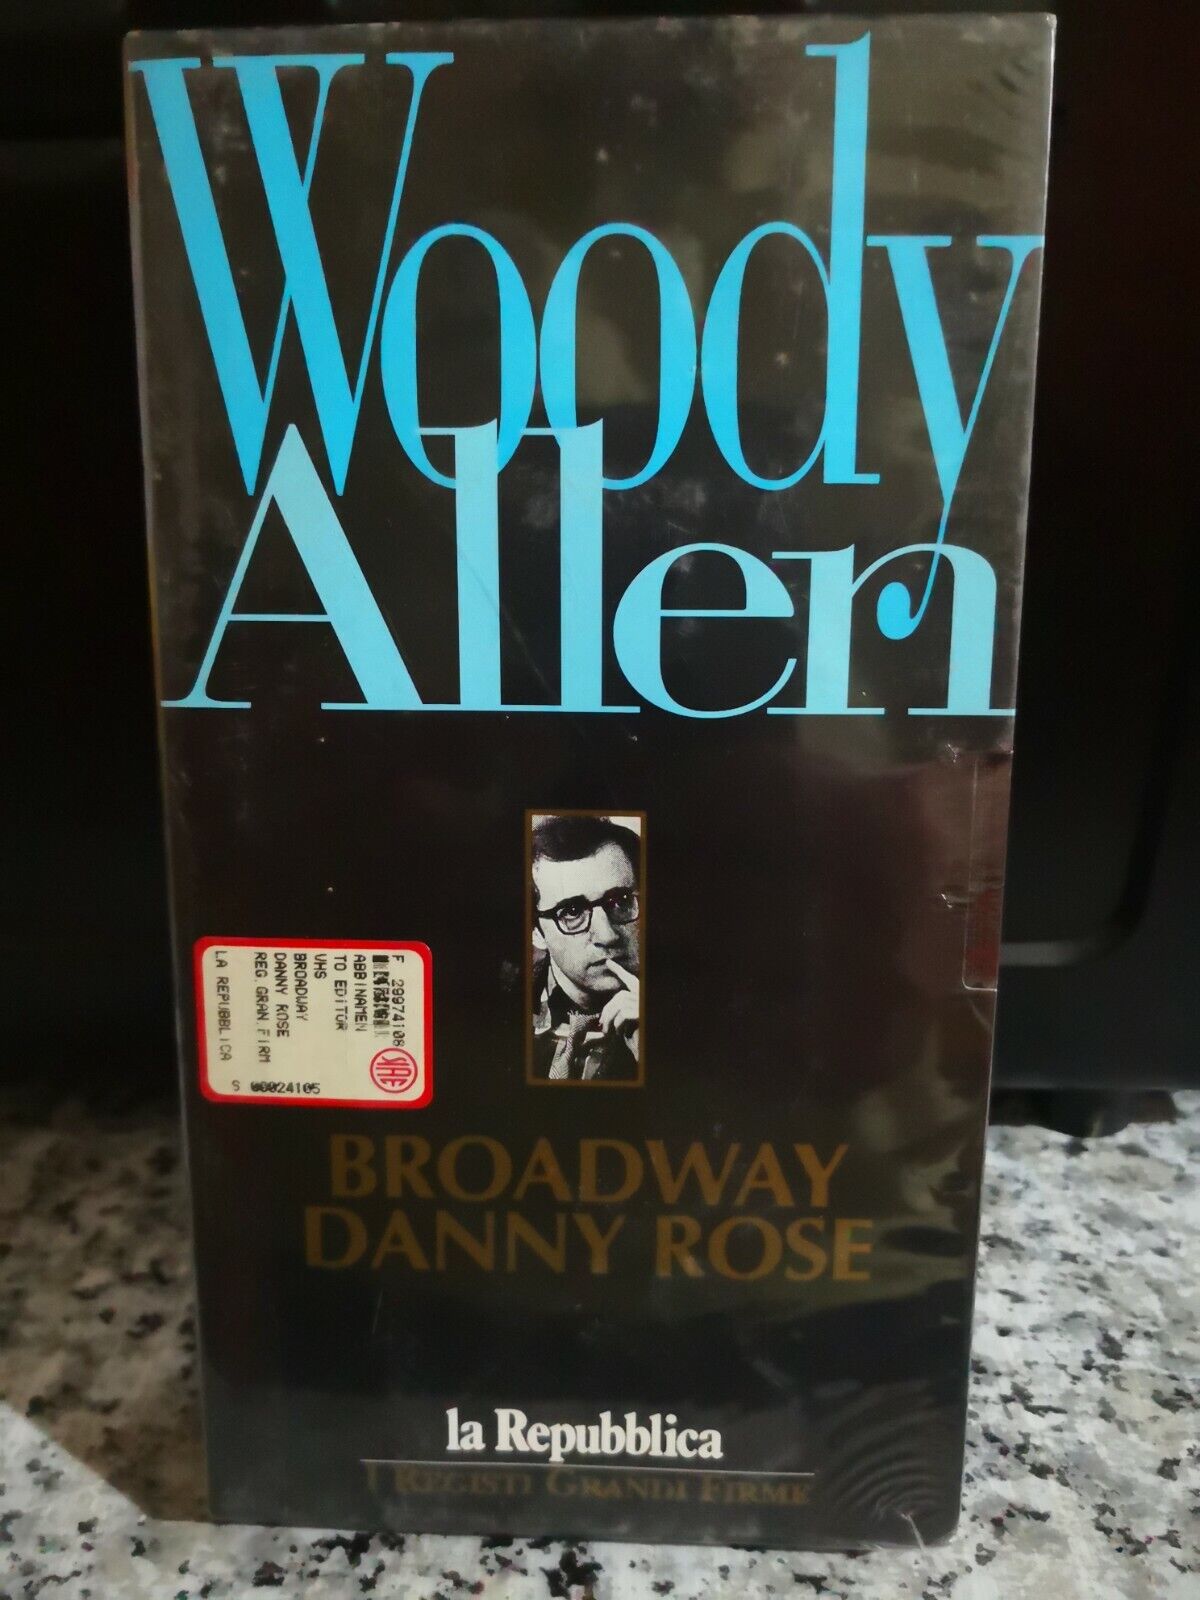 Broadway danny rose - vhs - 1984 - La repubblica -F